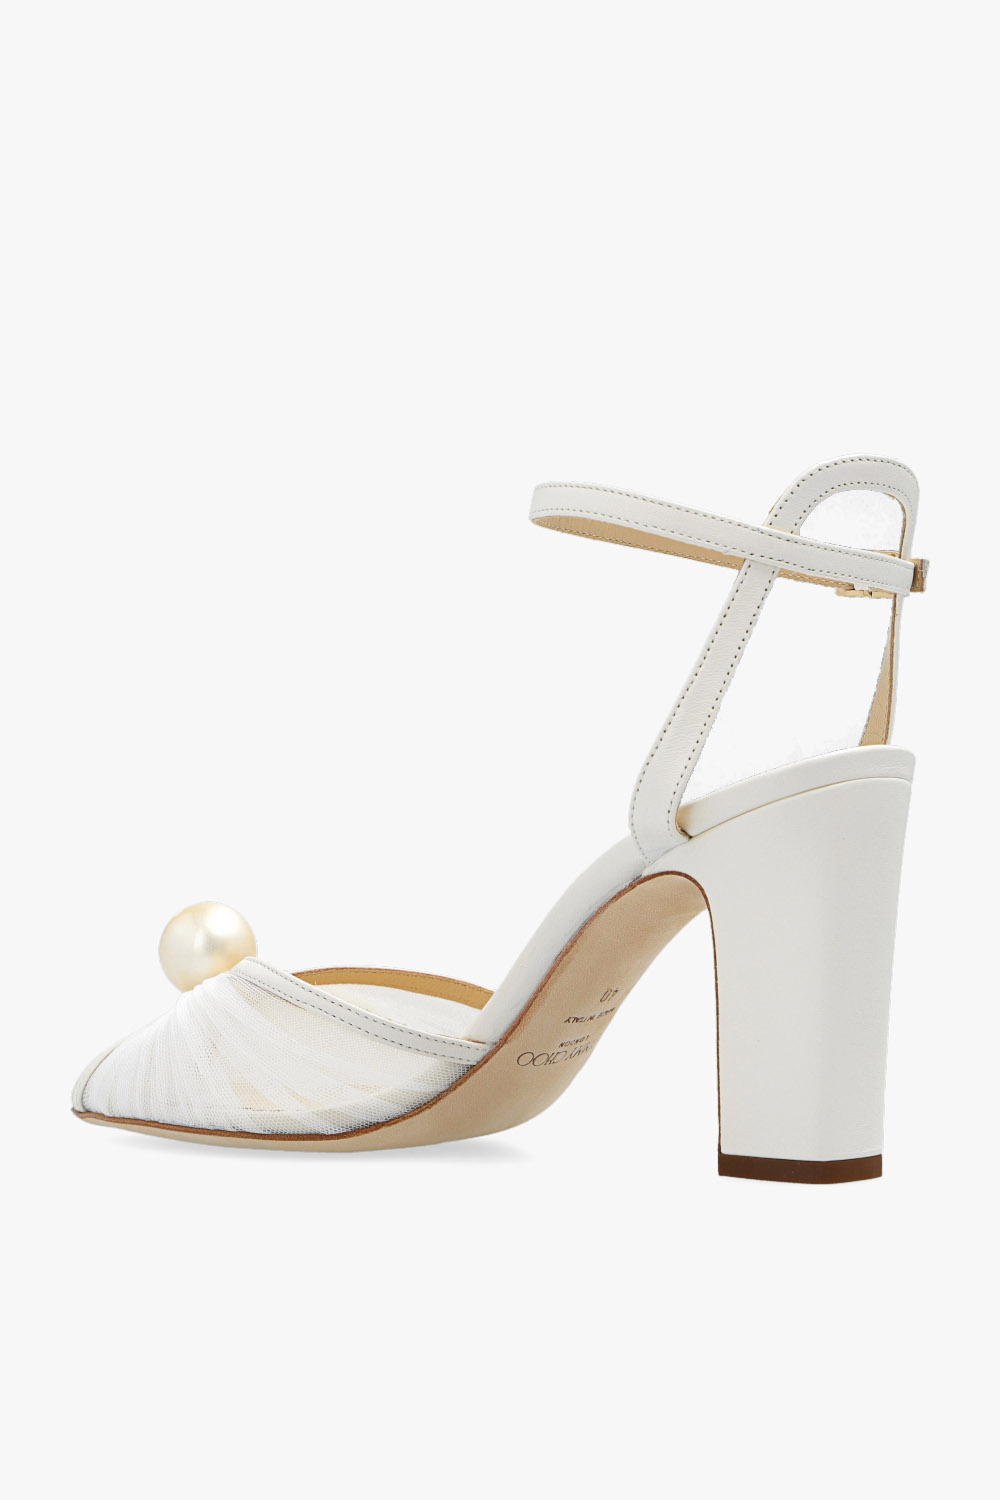 Jimmy Choo ‘Sacaria’ heeled sandals